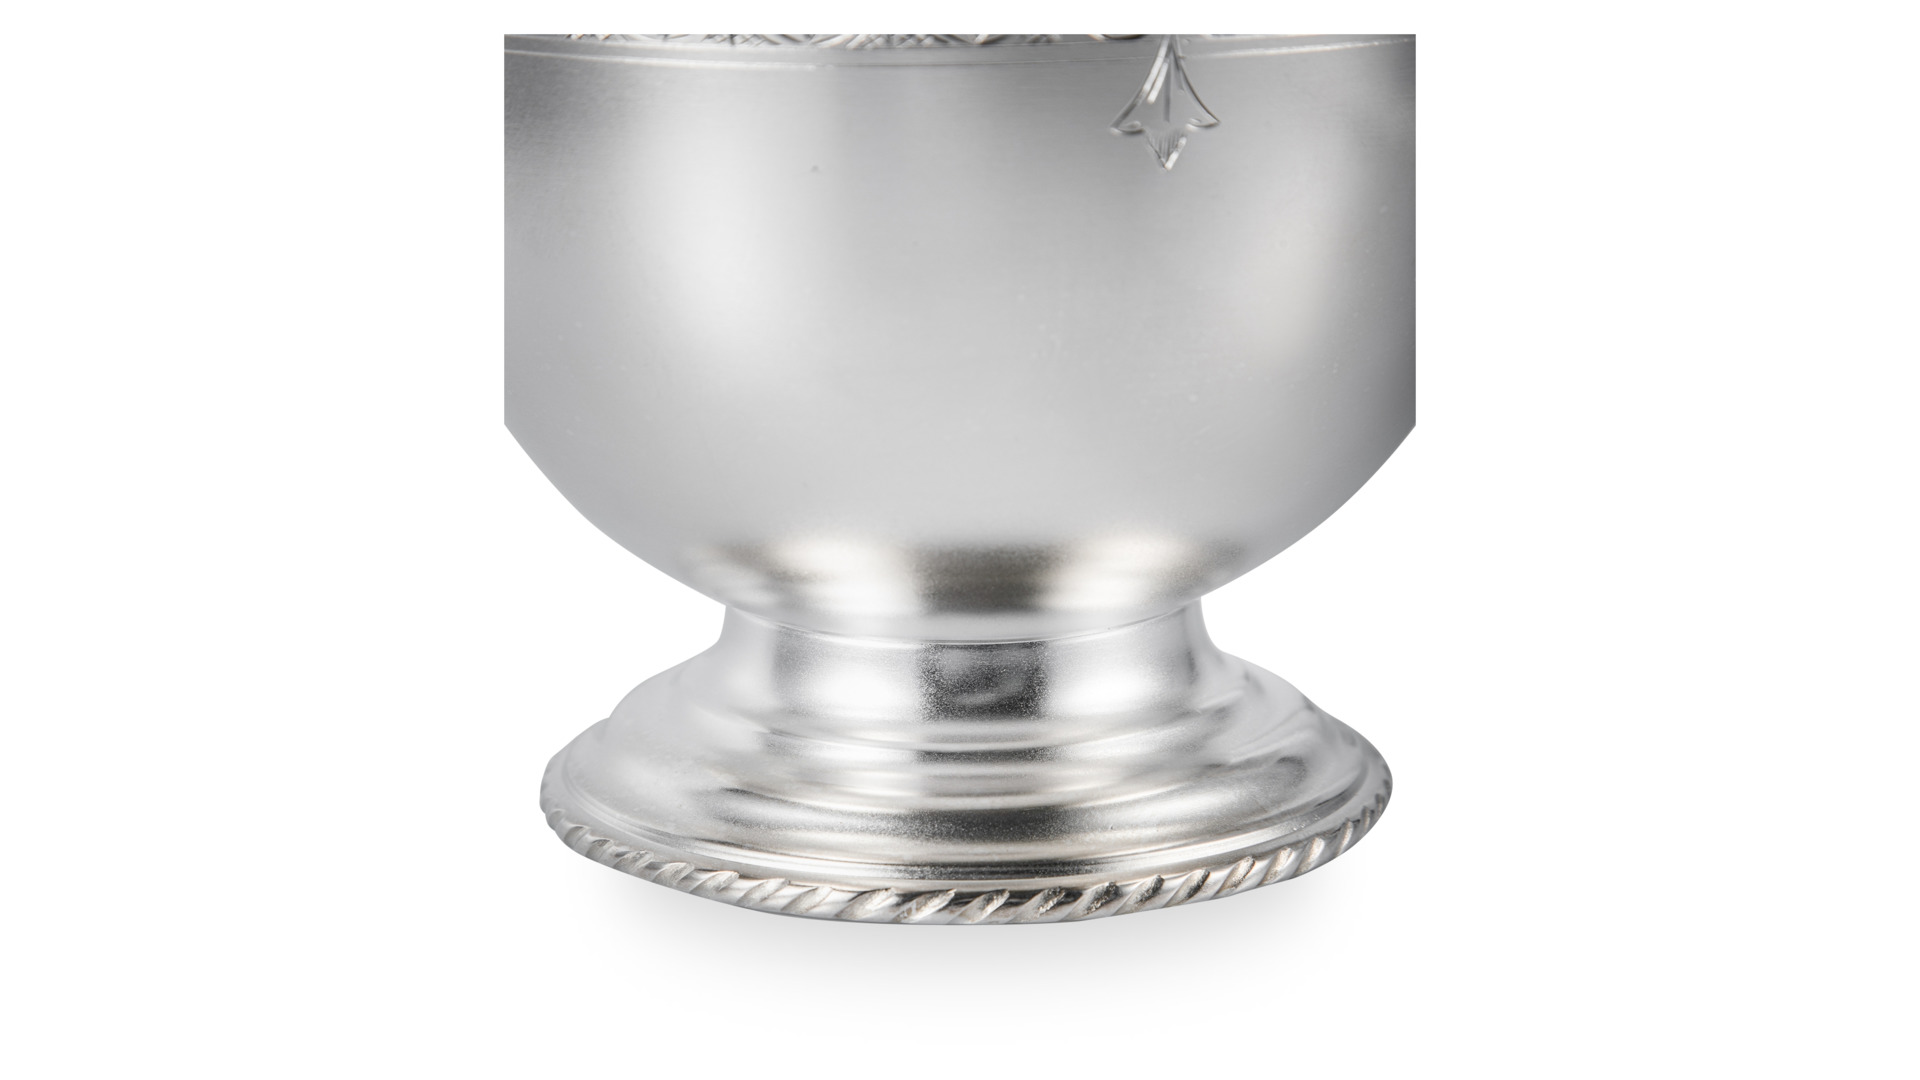 Емкость для льда Мстерский ювелир Виноградная лоза 606,4 г, серебро 925